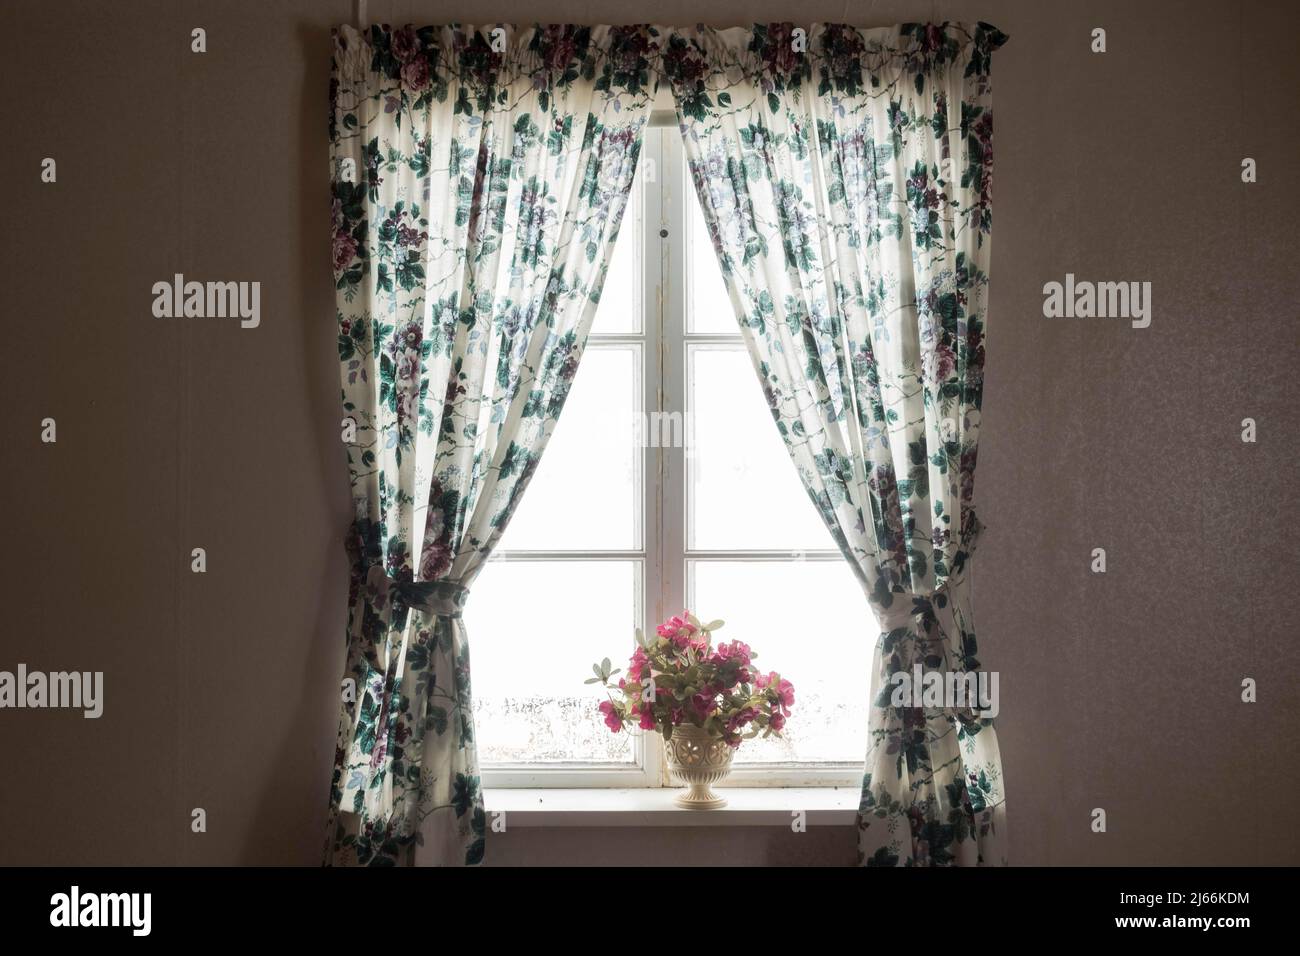 Fenster von innen mit gebluemten Gardinen und Blumenstrauss in einem alten  verlassenen Haus. Vaermland, Schweden Fotografía de stock - Alamy